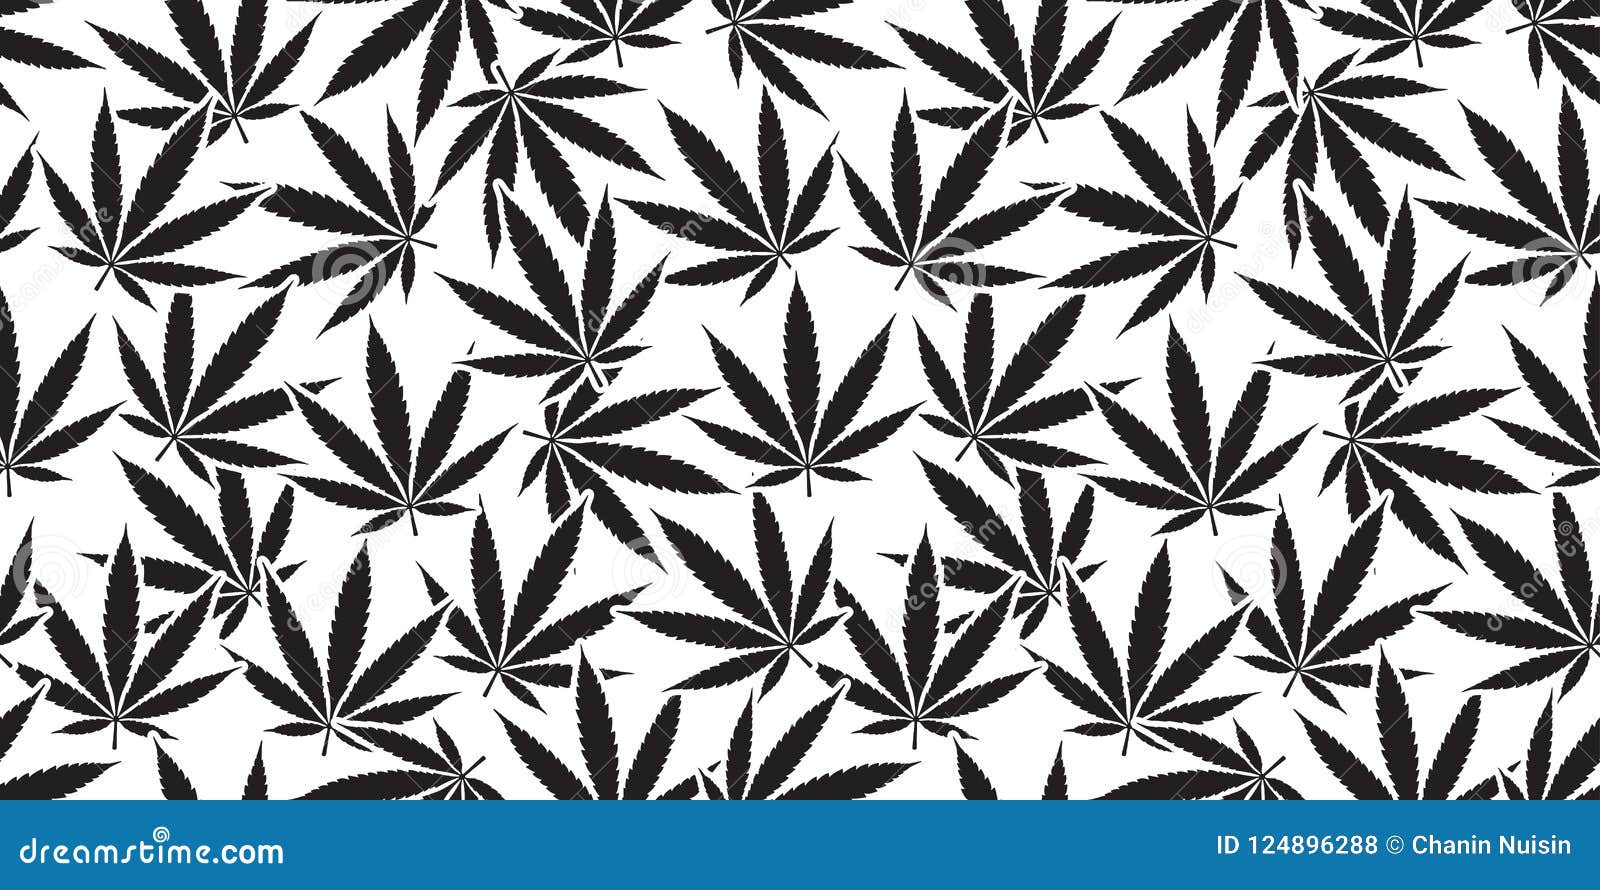 Weed Marijuana Cannabis Seamless Pattern Leaf Isolated